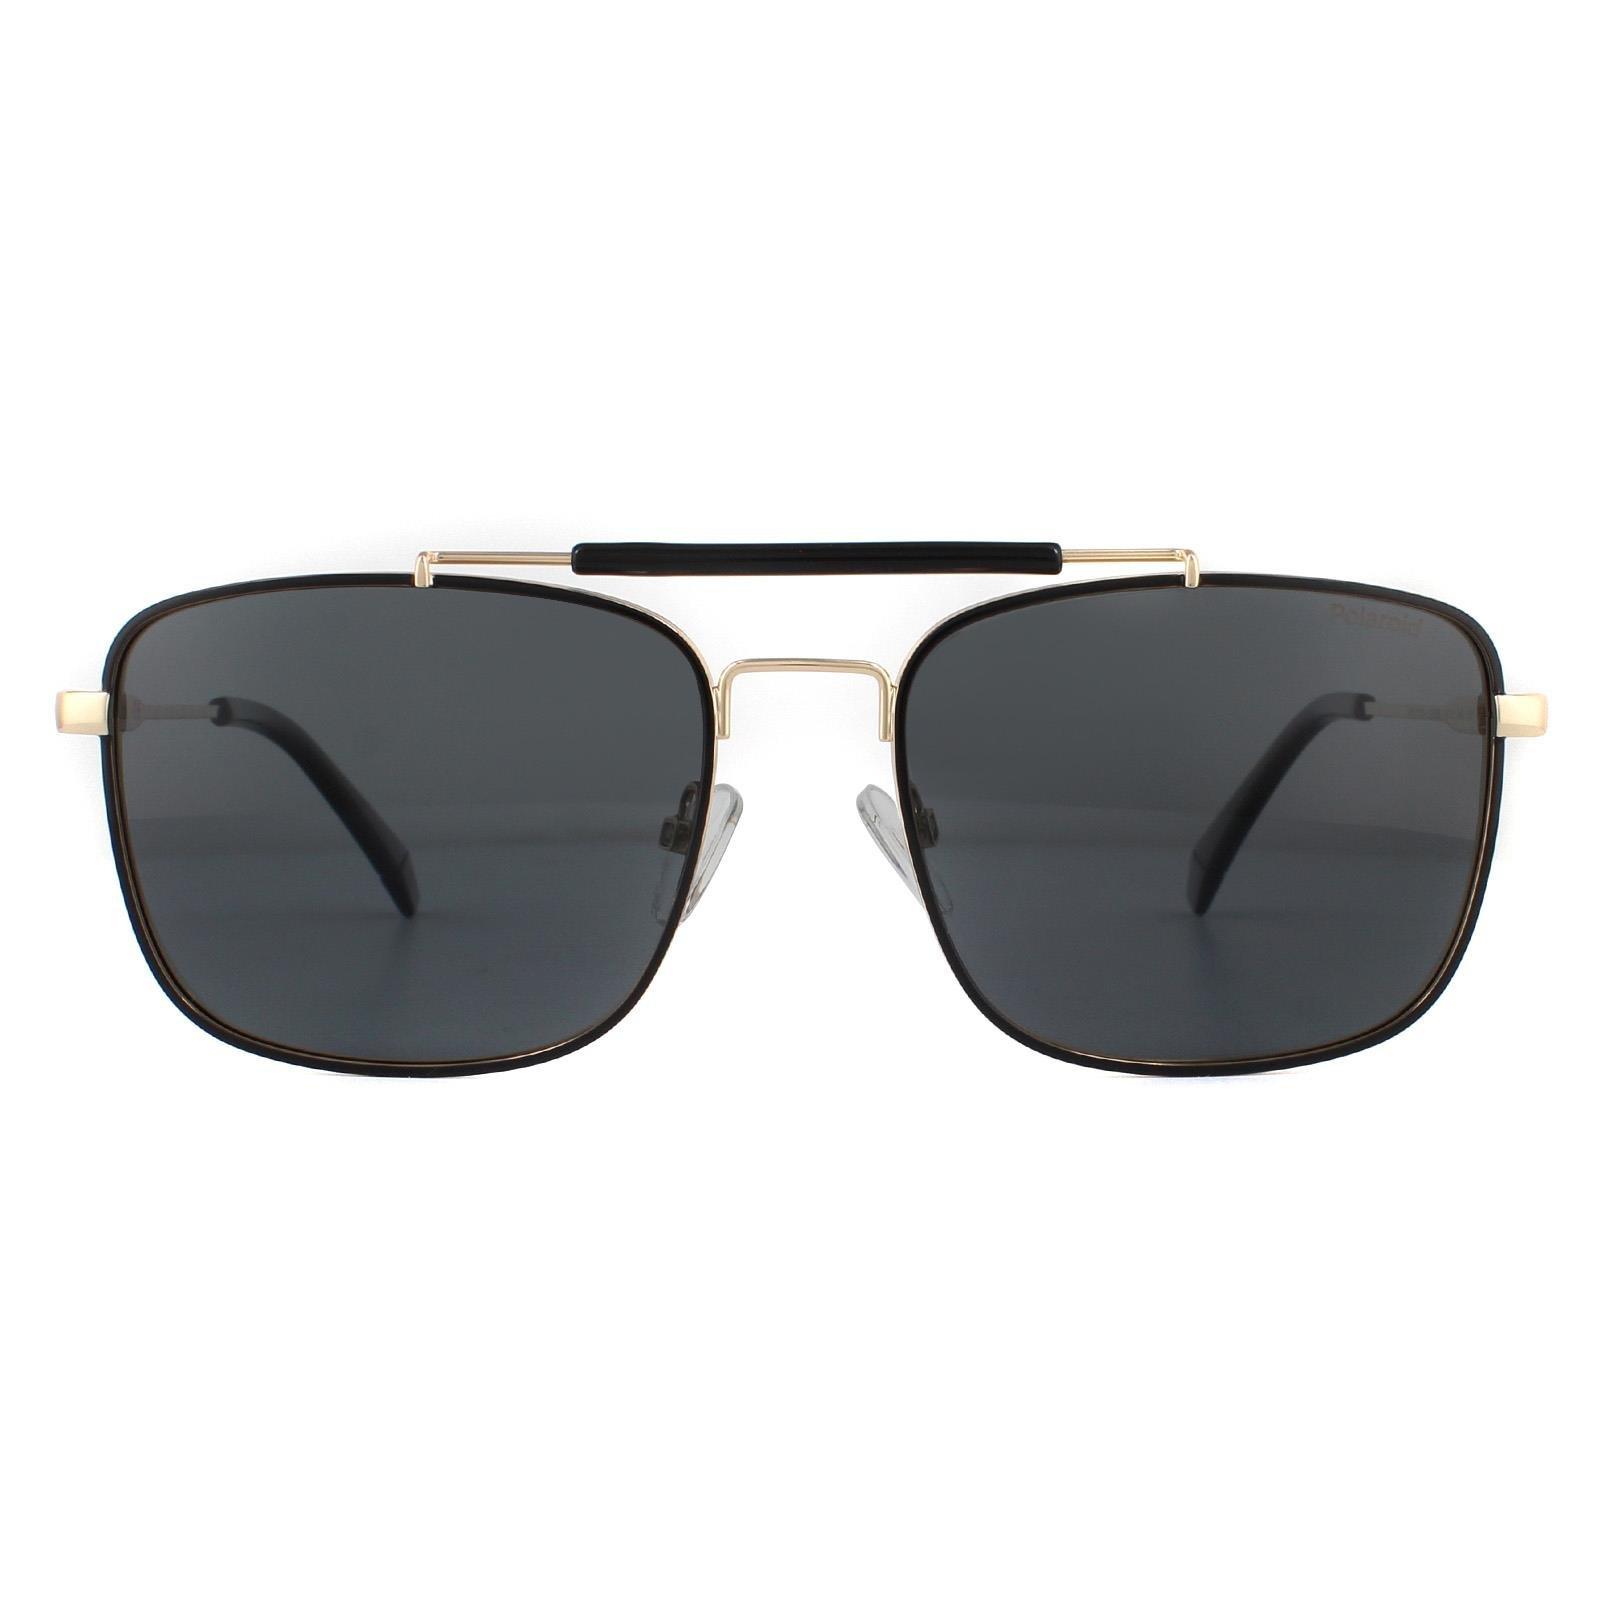 Поляризованные солнцезащитные очки Aviator Black Gold Grey Polaroid, золото polaroid pld 8025 s 1ed